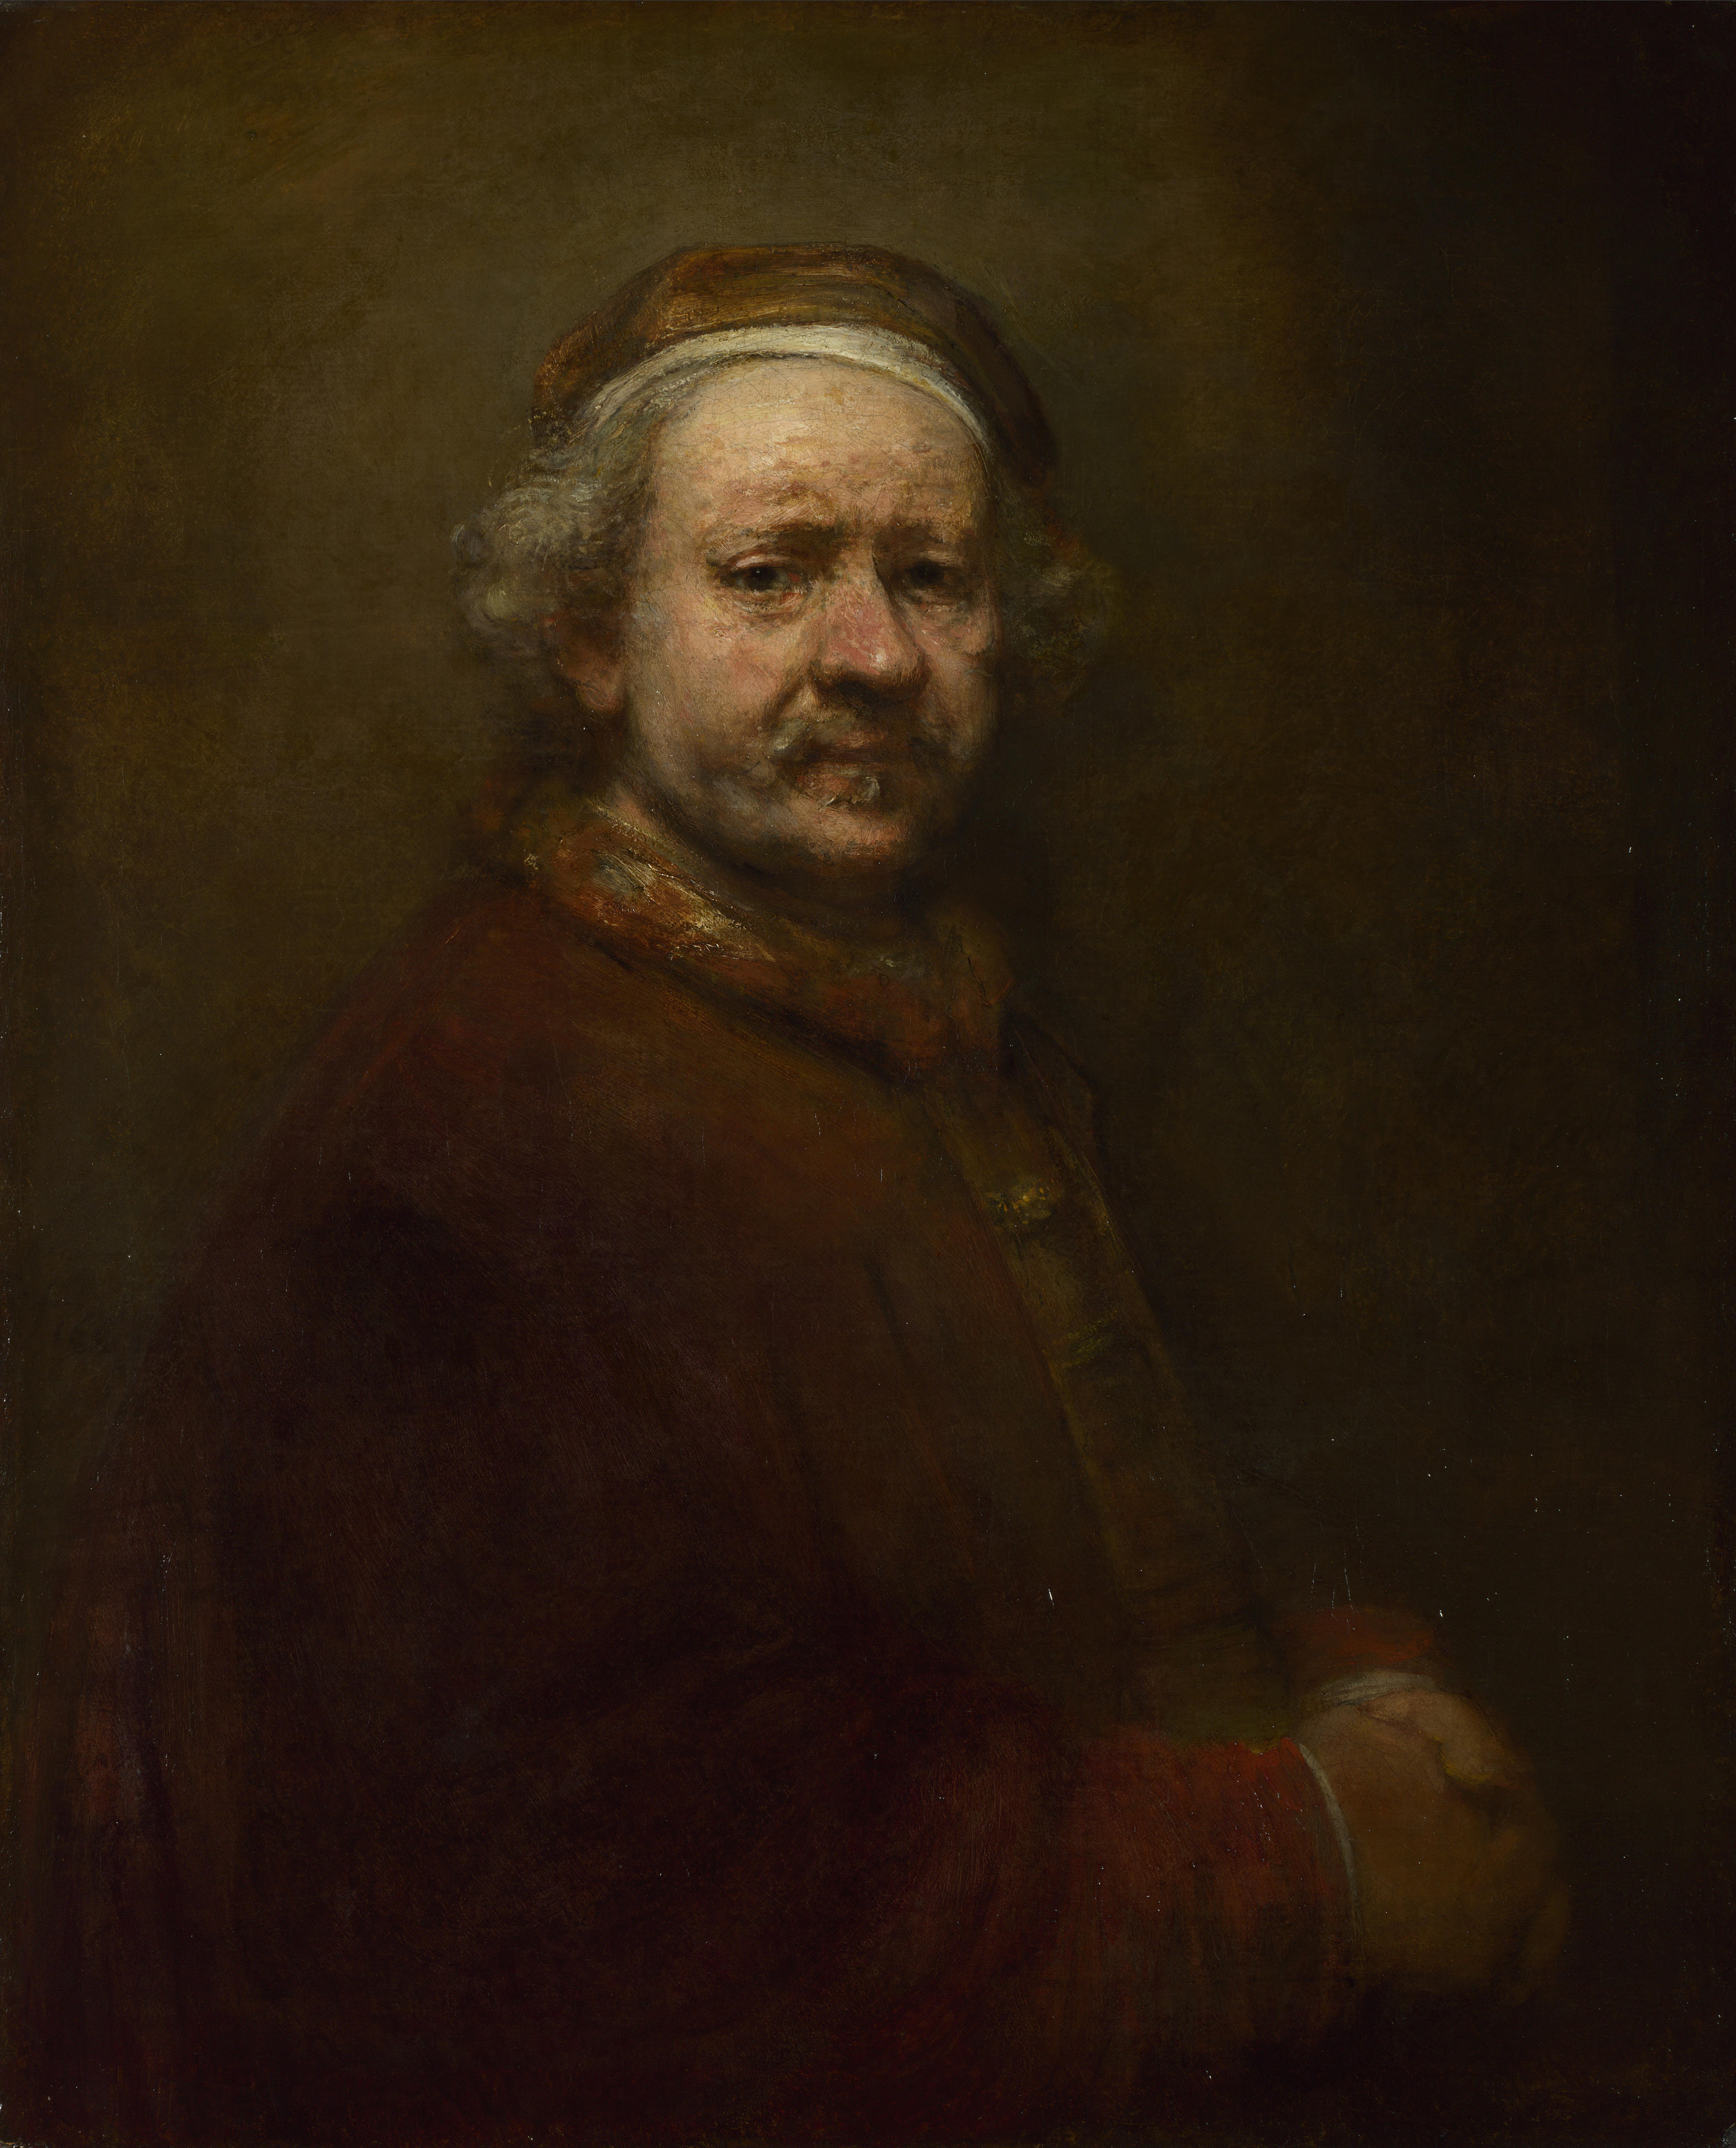 Zelfportret by Rembrandt Van Rijn - 1669 - 86 x 70.5 cm 